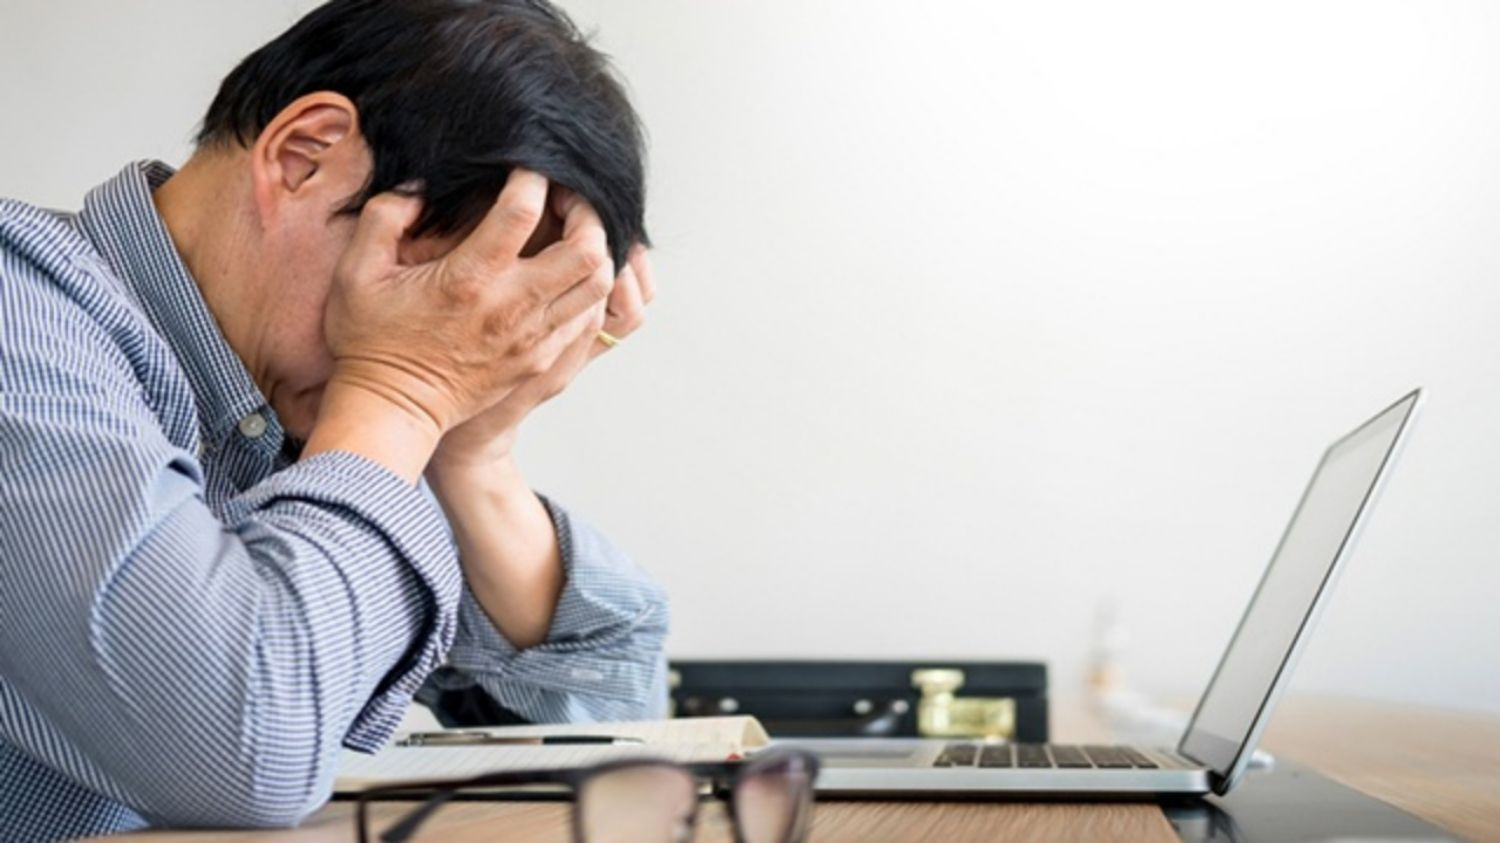 Căng thẳng, stress gây ảnh hưởng thế nào đến bệnh suy giãn tĩnh mạch?